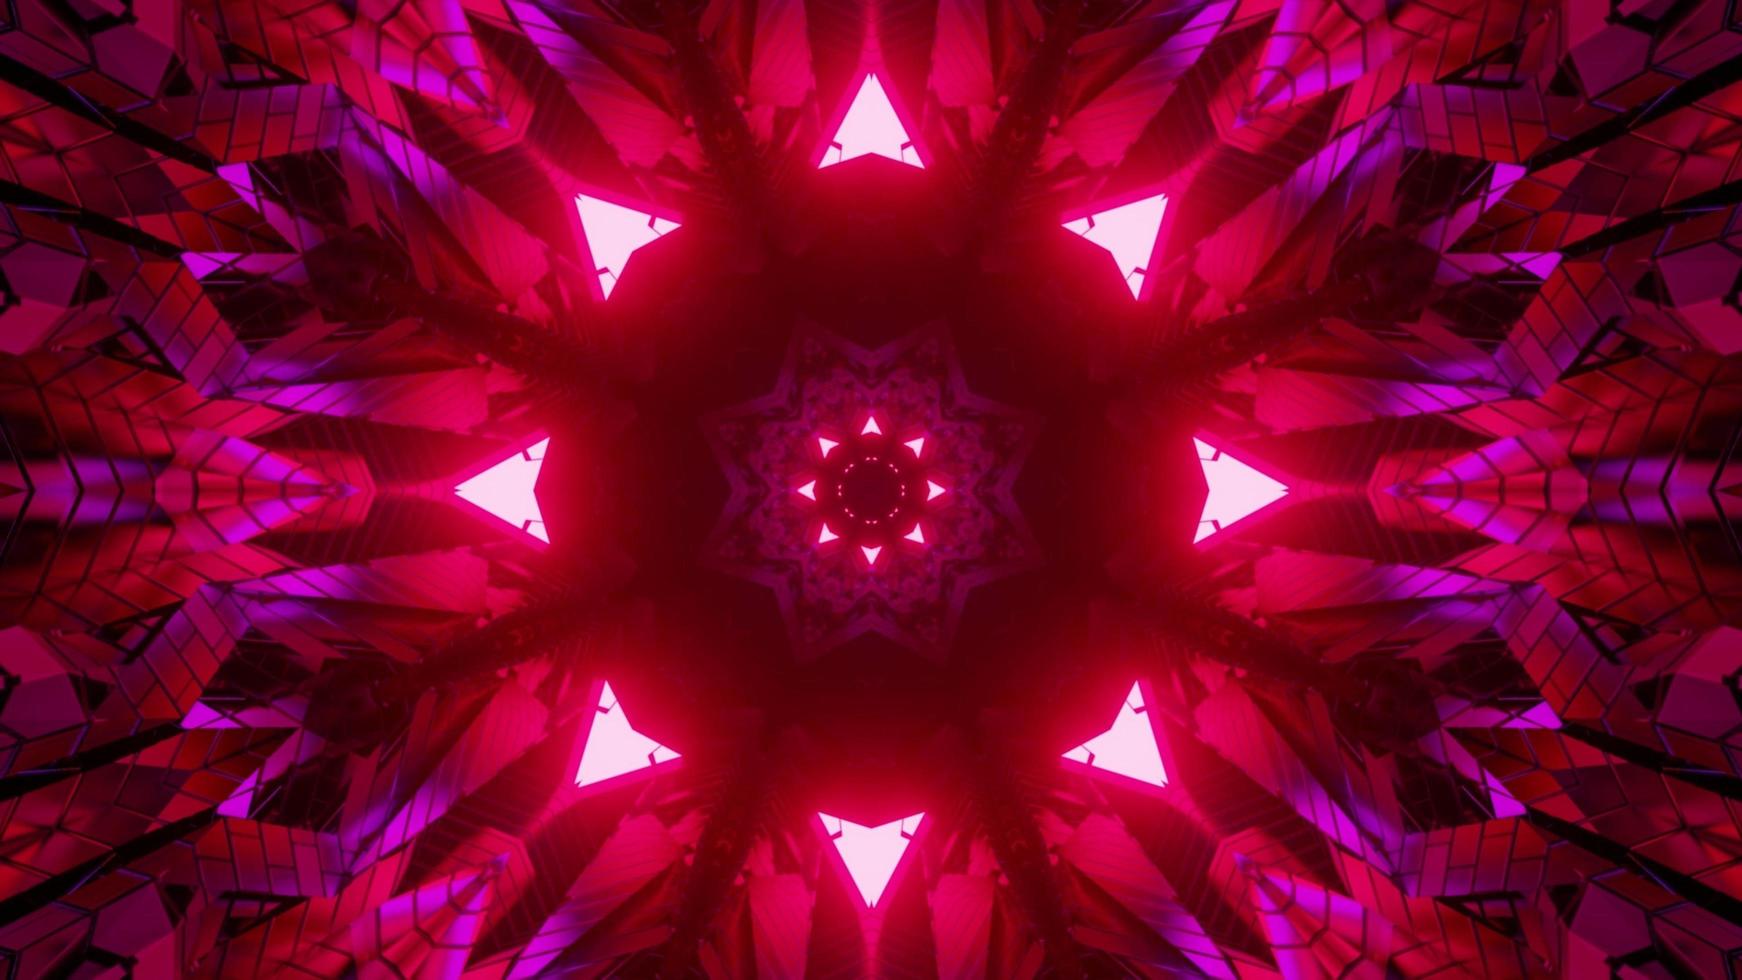 3d illustratie van caleidoscopisch bloemenornament met symmetrische neonlichten foto